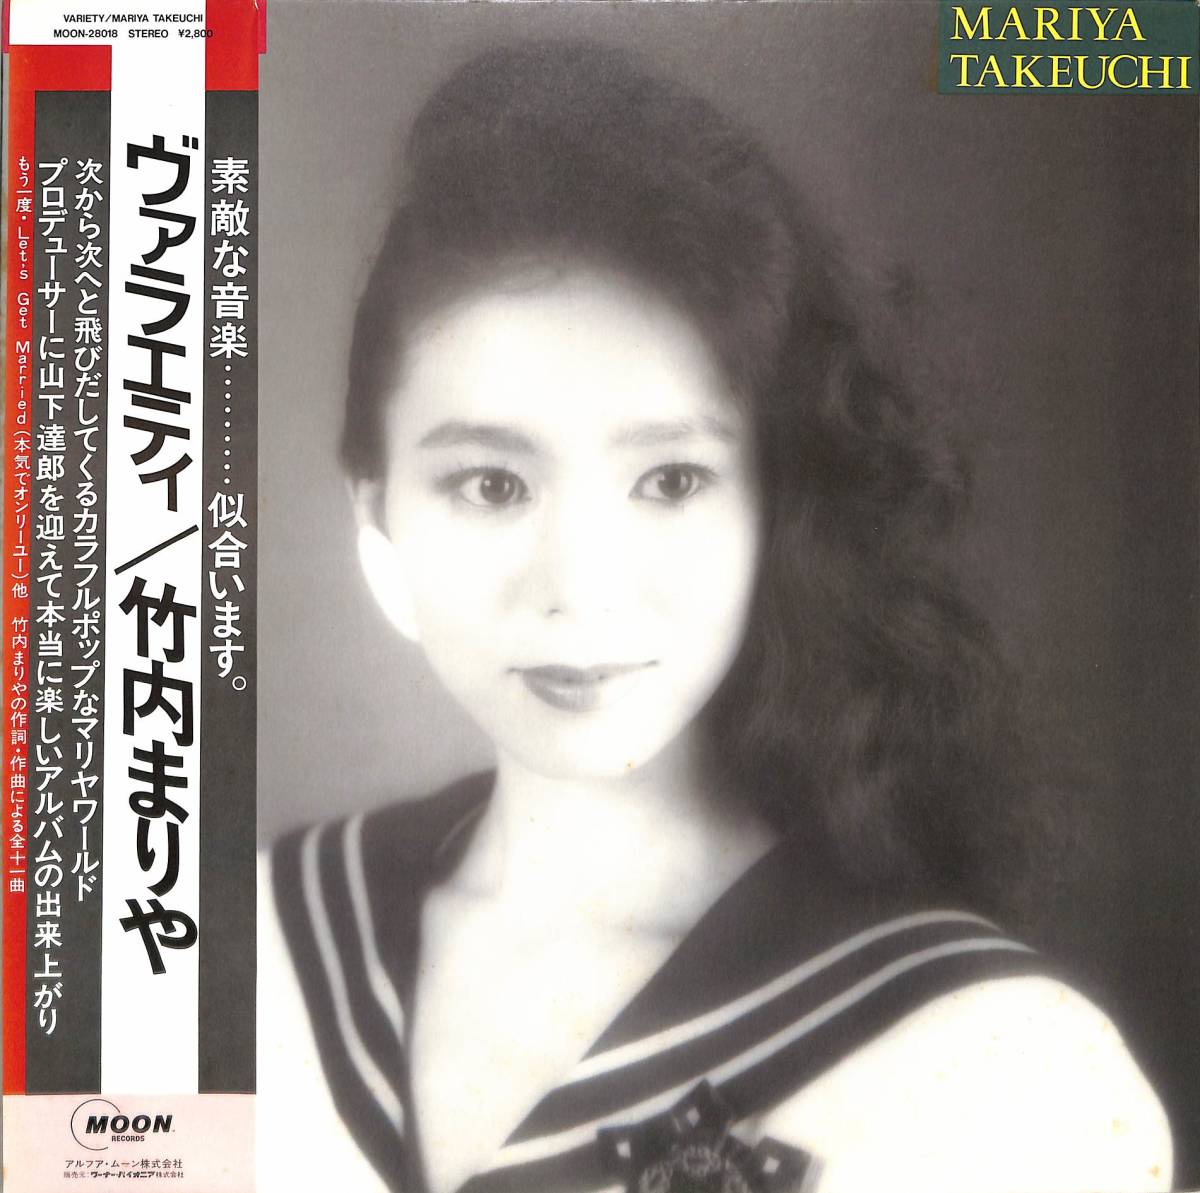 A00548430/LP/ Takeuchi Mariya [Variety (1984 year *MOON-28018* Yamashita Tatsuro produce * soul *SOUL)]